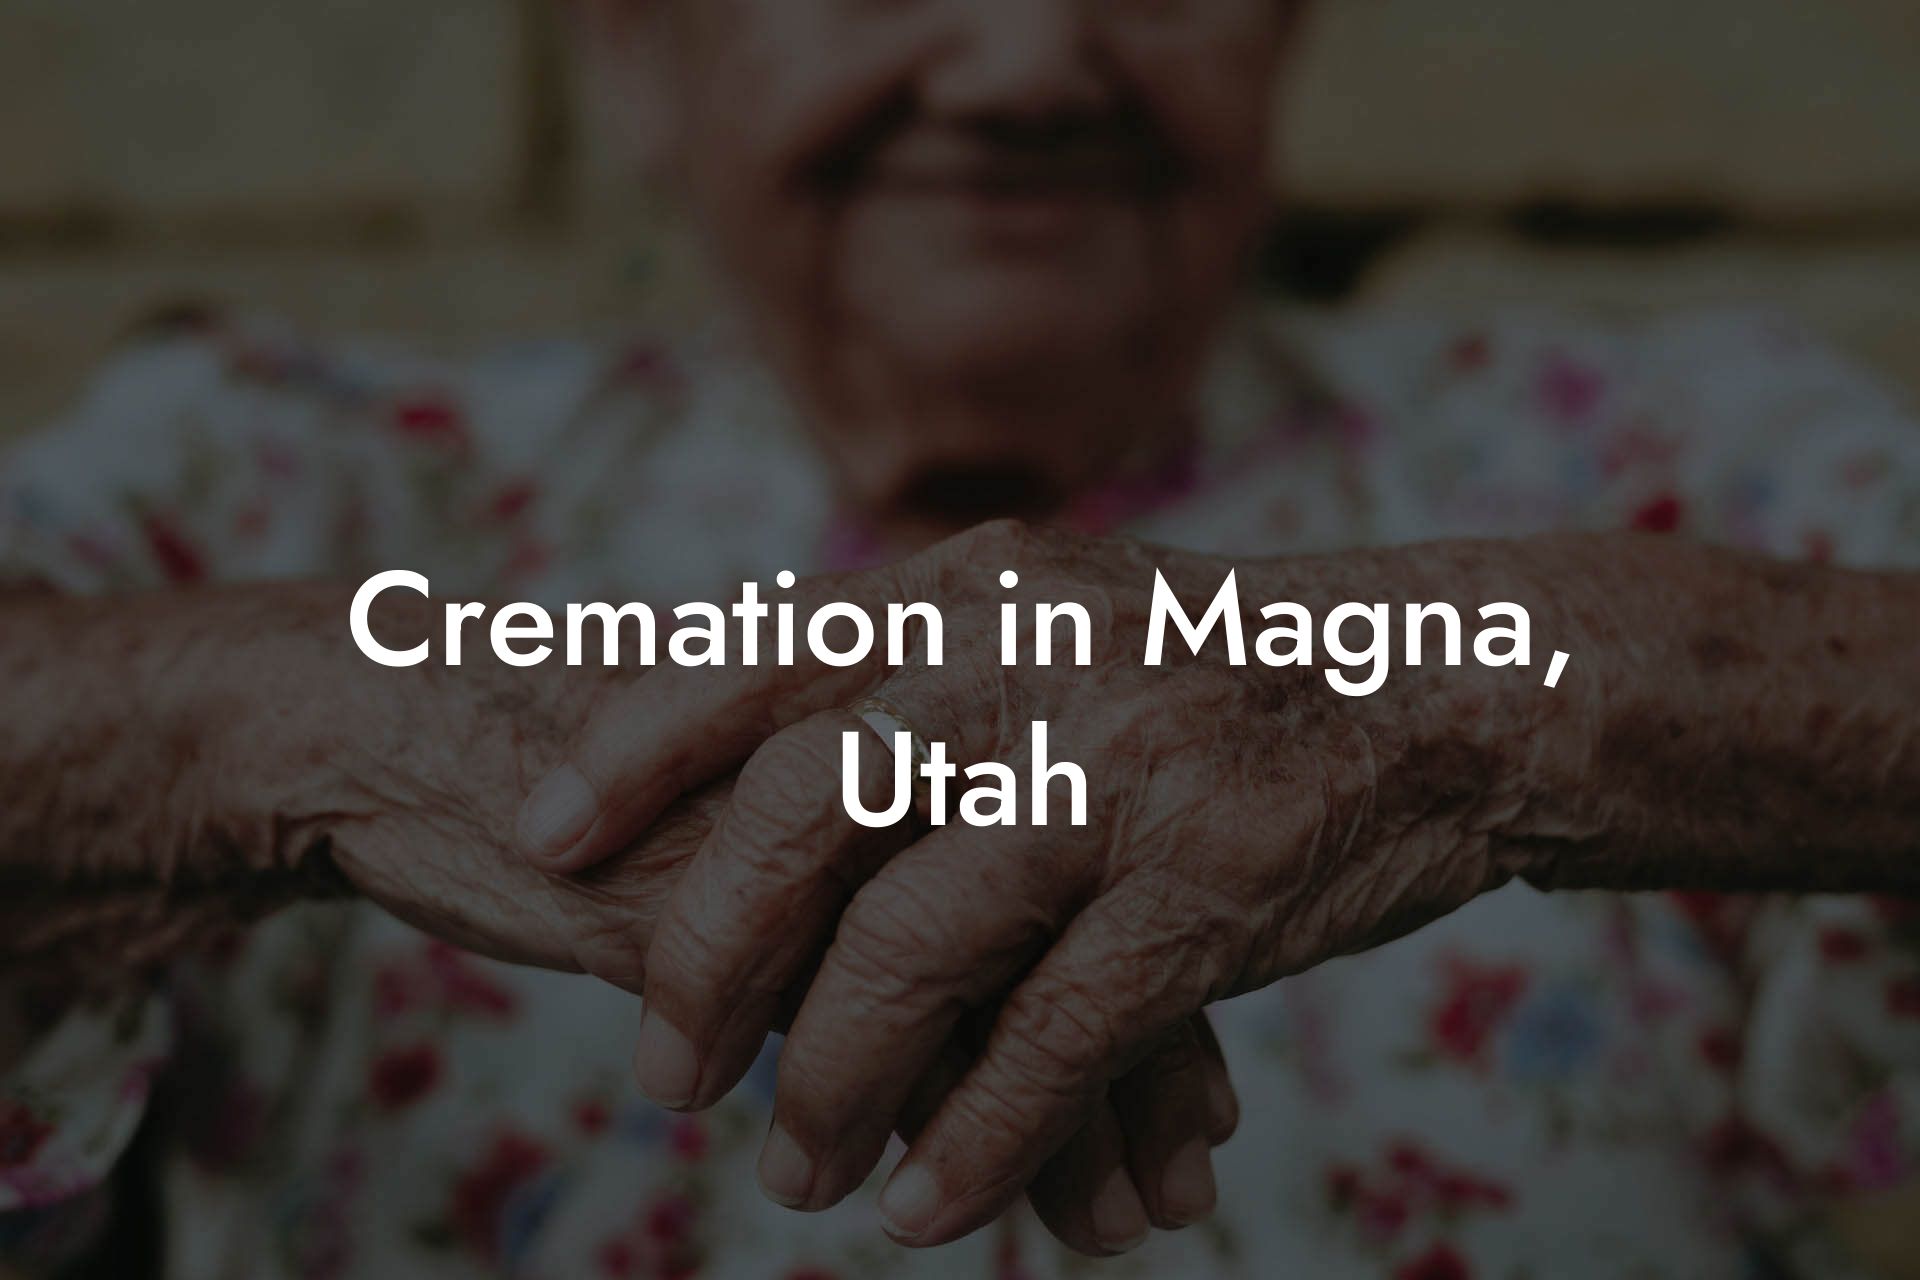 Cremation in Magna, Utah